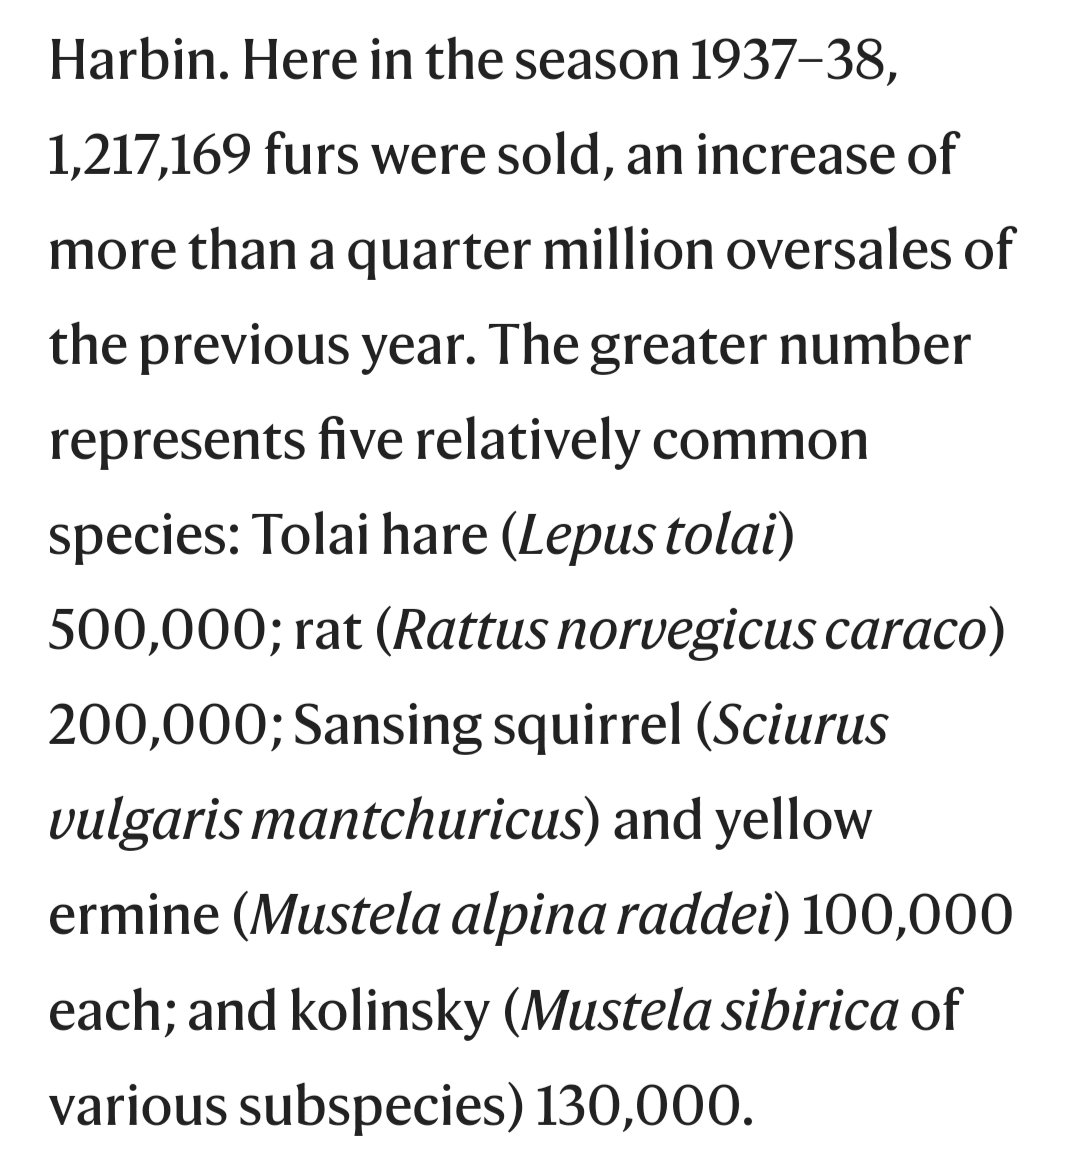 鲜为人知的北满毛皮生意 满洲国哈尔滨 1937-1938年的一个季节，共成交1,217,169张毛皮，主要有以下5个种类，另外还有一些稀有动物。 -满洲兔 -褐鼠 -满洲红松鼠 -黄貂 -黄鼬，俗名黄鼠狼 Source: Fur-trade in Northern Manchuria, Nature, Volume 144, 1939